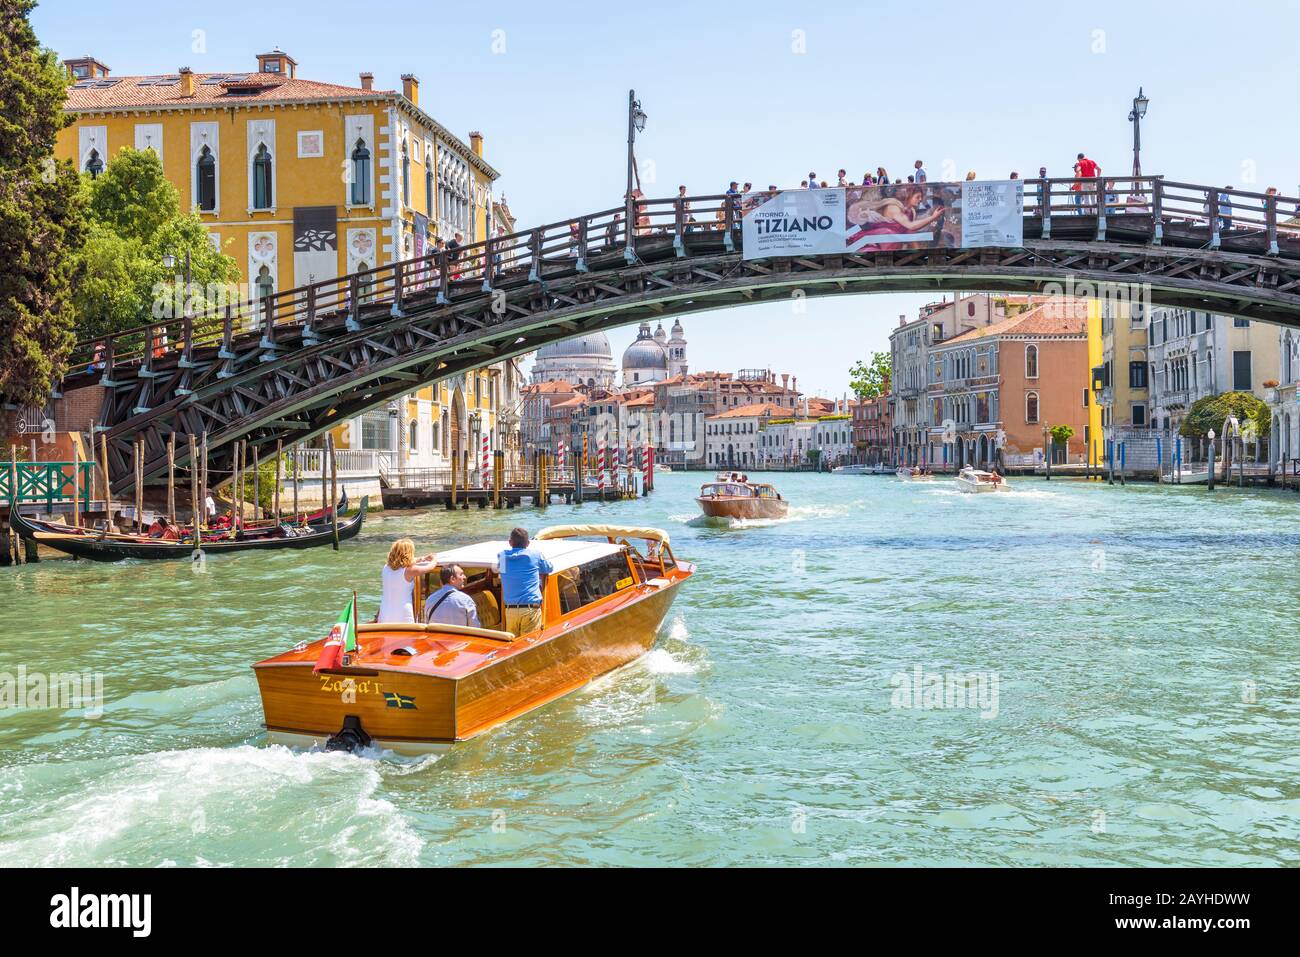 Venezia, Italia - 18 maggio 2017: Il taxi acqueo con i turisti naviga sul Canal Grande a Venezia. Le barche a motore sono il principale mezzo di trasporto a Venezia. Viaggio romantico acr Foto Stock